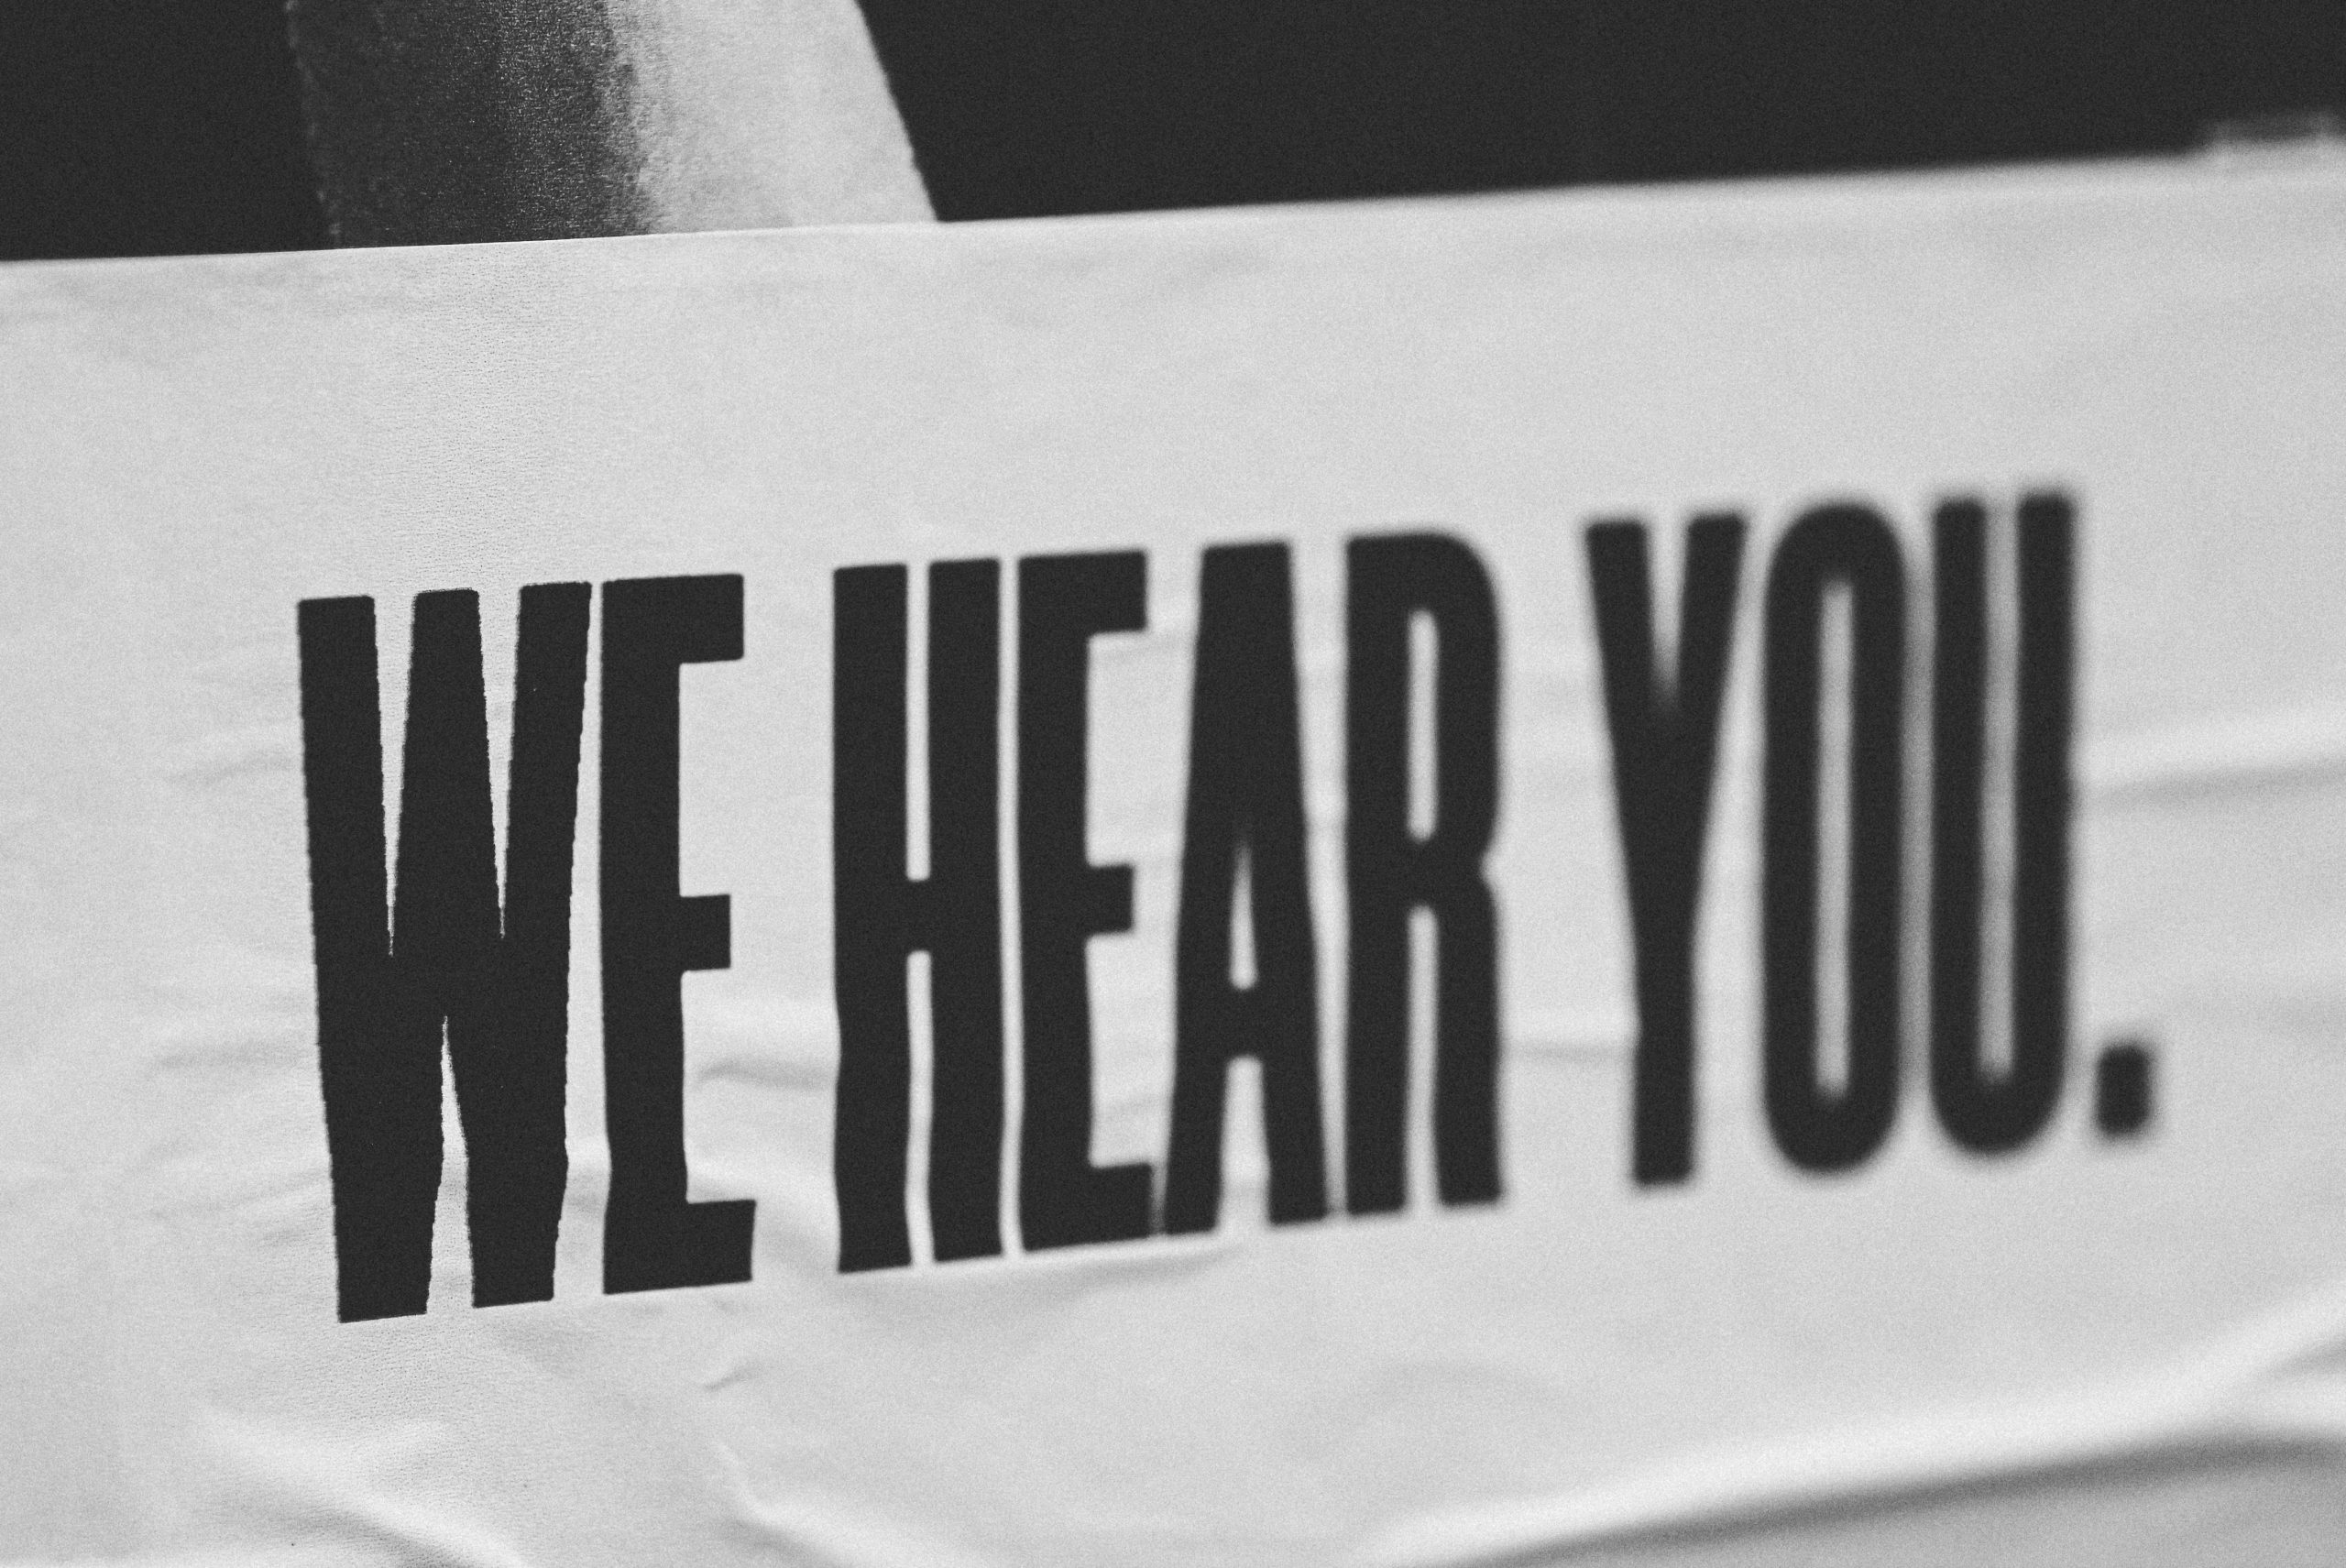 Una pancarta blanca con el texto "Te escuchamos" en letras negras en negrita